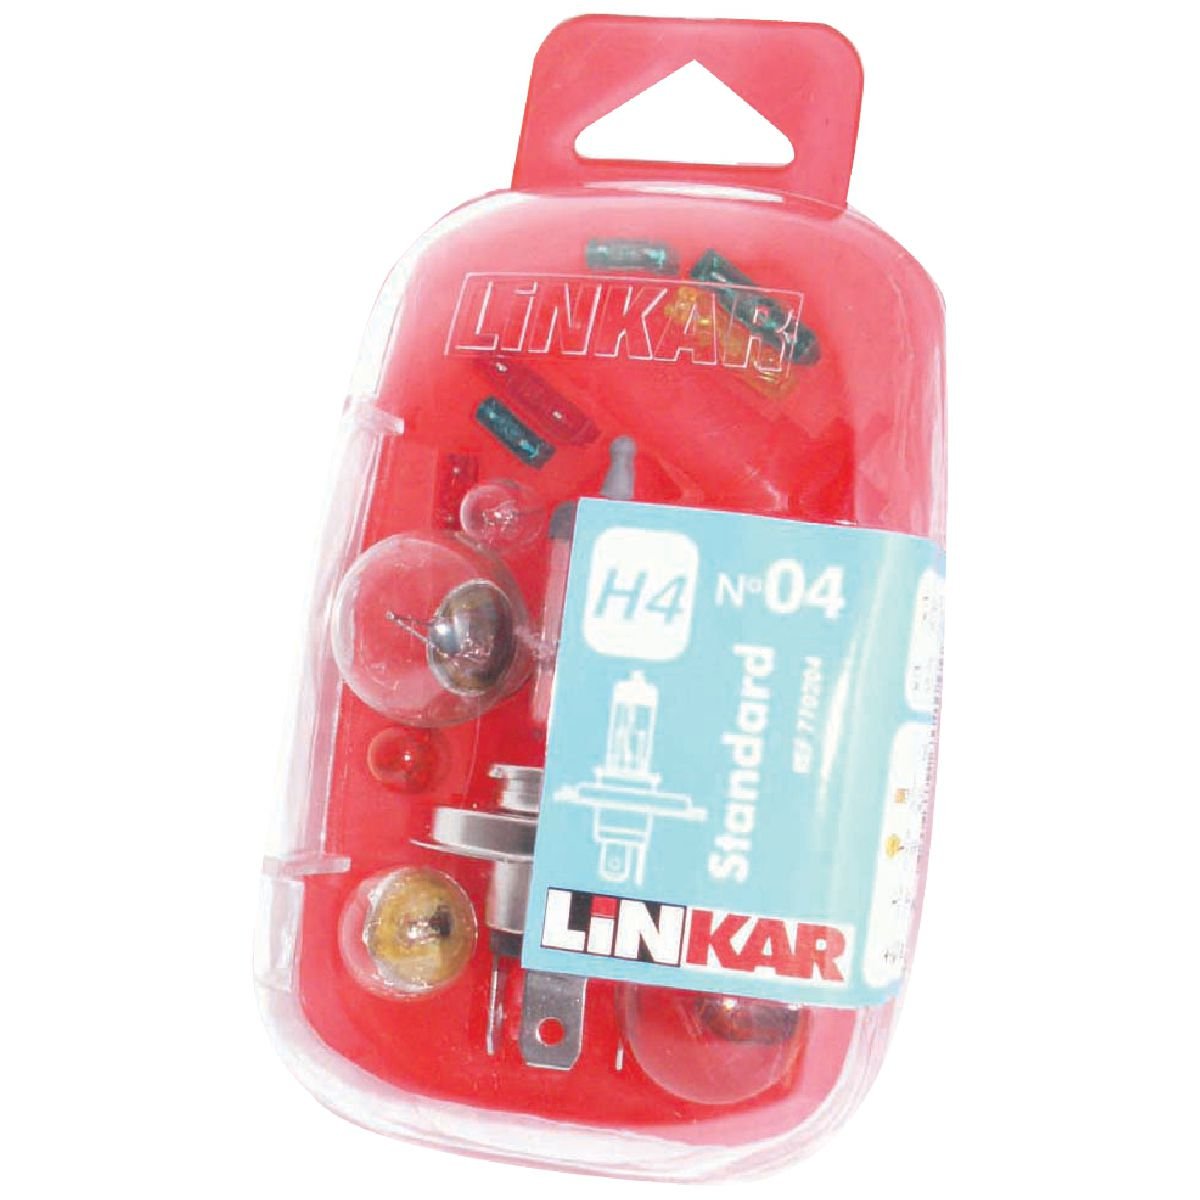 LINKAR 770204 Set H4 STD N ° 04 14-teilig von Linkar